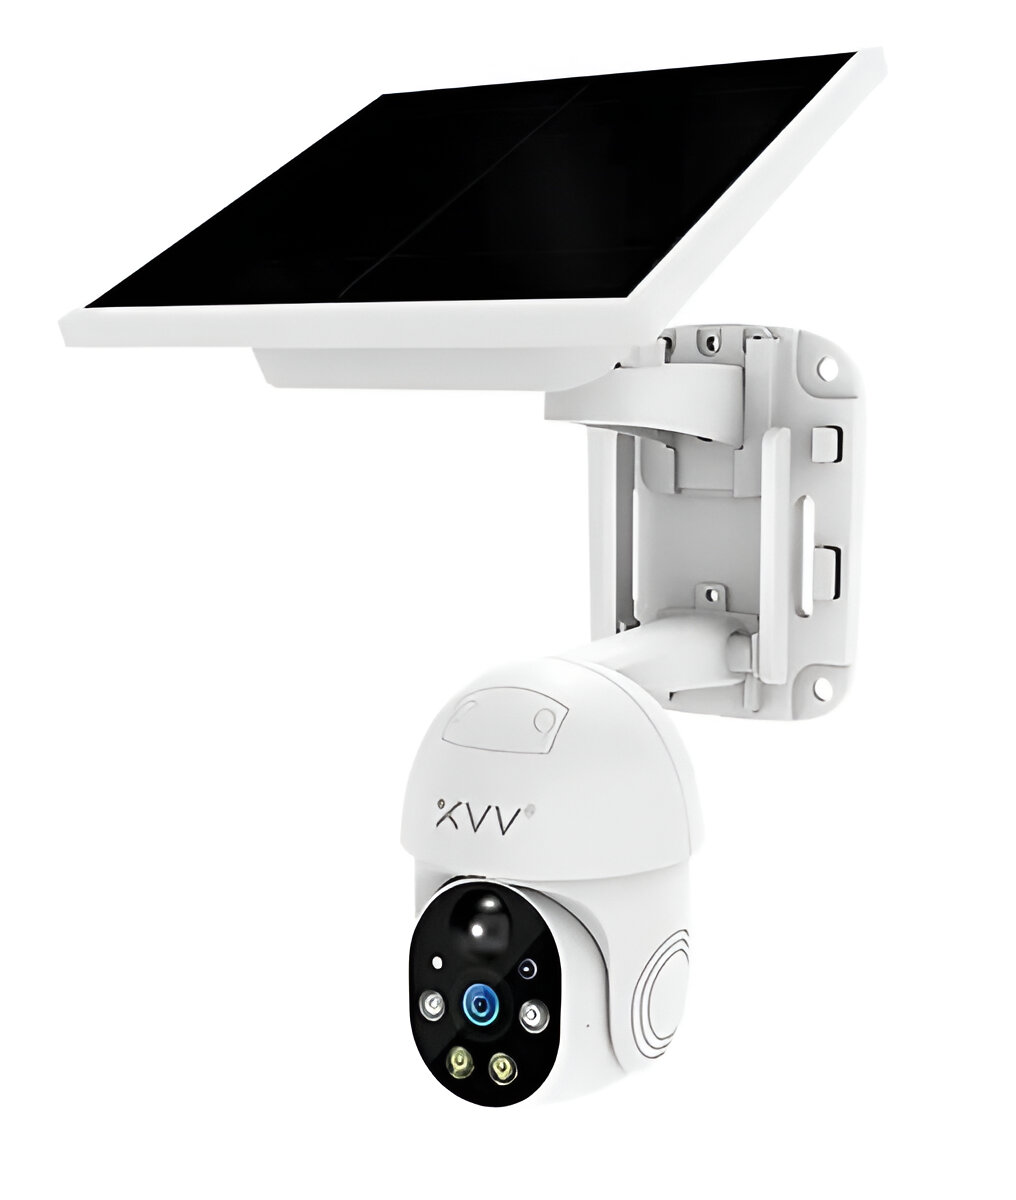 Поворотная Wi-Fi IP-камера видеонаблюдения Xiaomi Xiaovv Solar-Powered Outdoor PTZ Camera P6 Pro (XVV-1120G-P6 Pro) поворотная wi fi ip камера видеонаблюдения xiaomi xiaovv solar powered outdoor ptz camera p6 pro xvv 1120g p6 pro